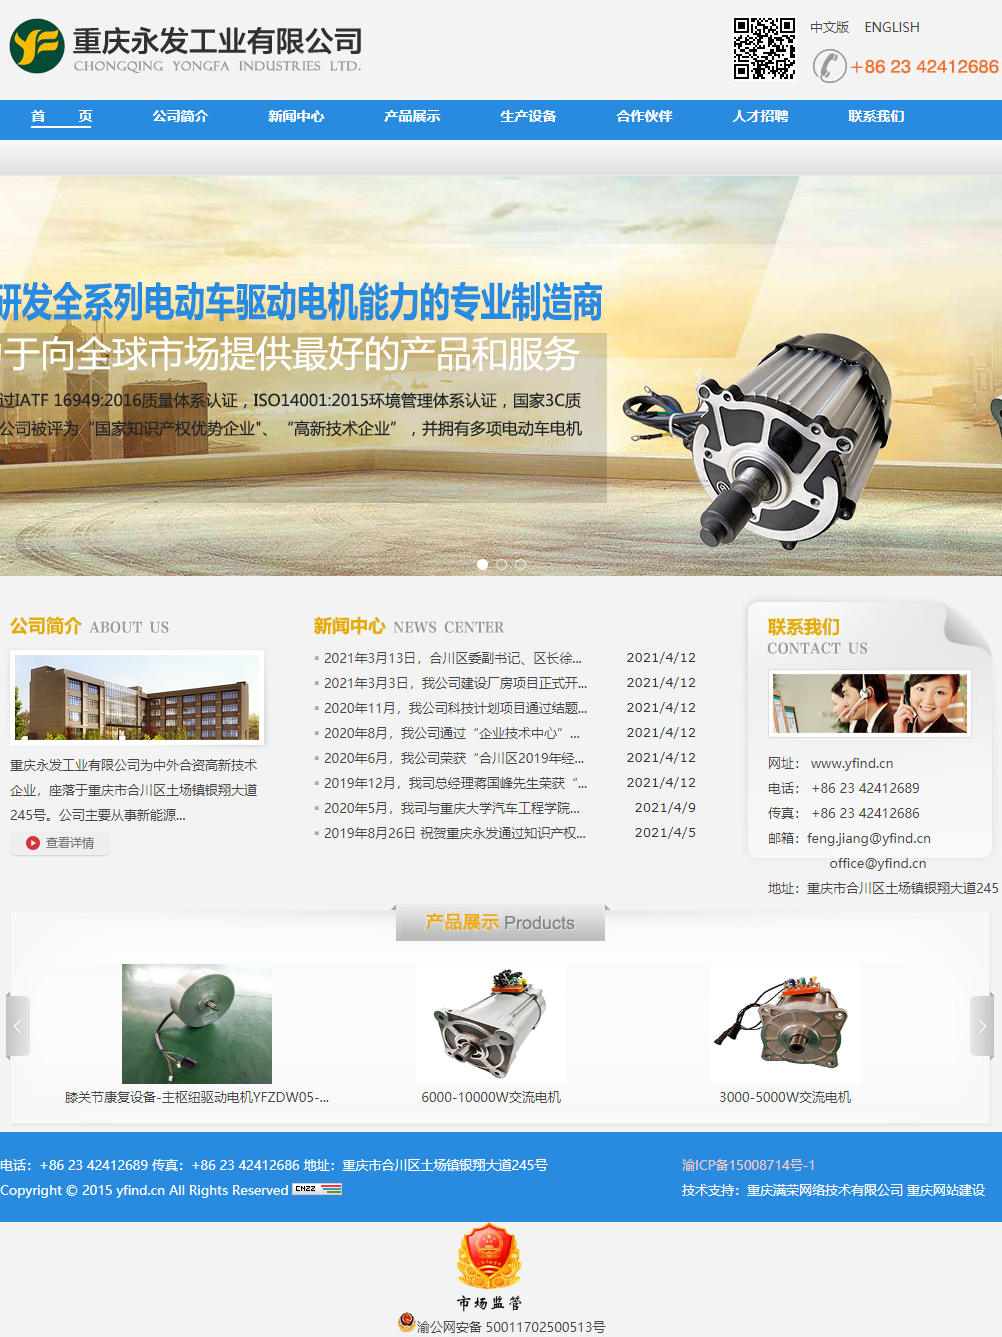 重庆永发工业有限公司网站案例